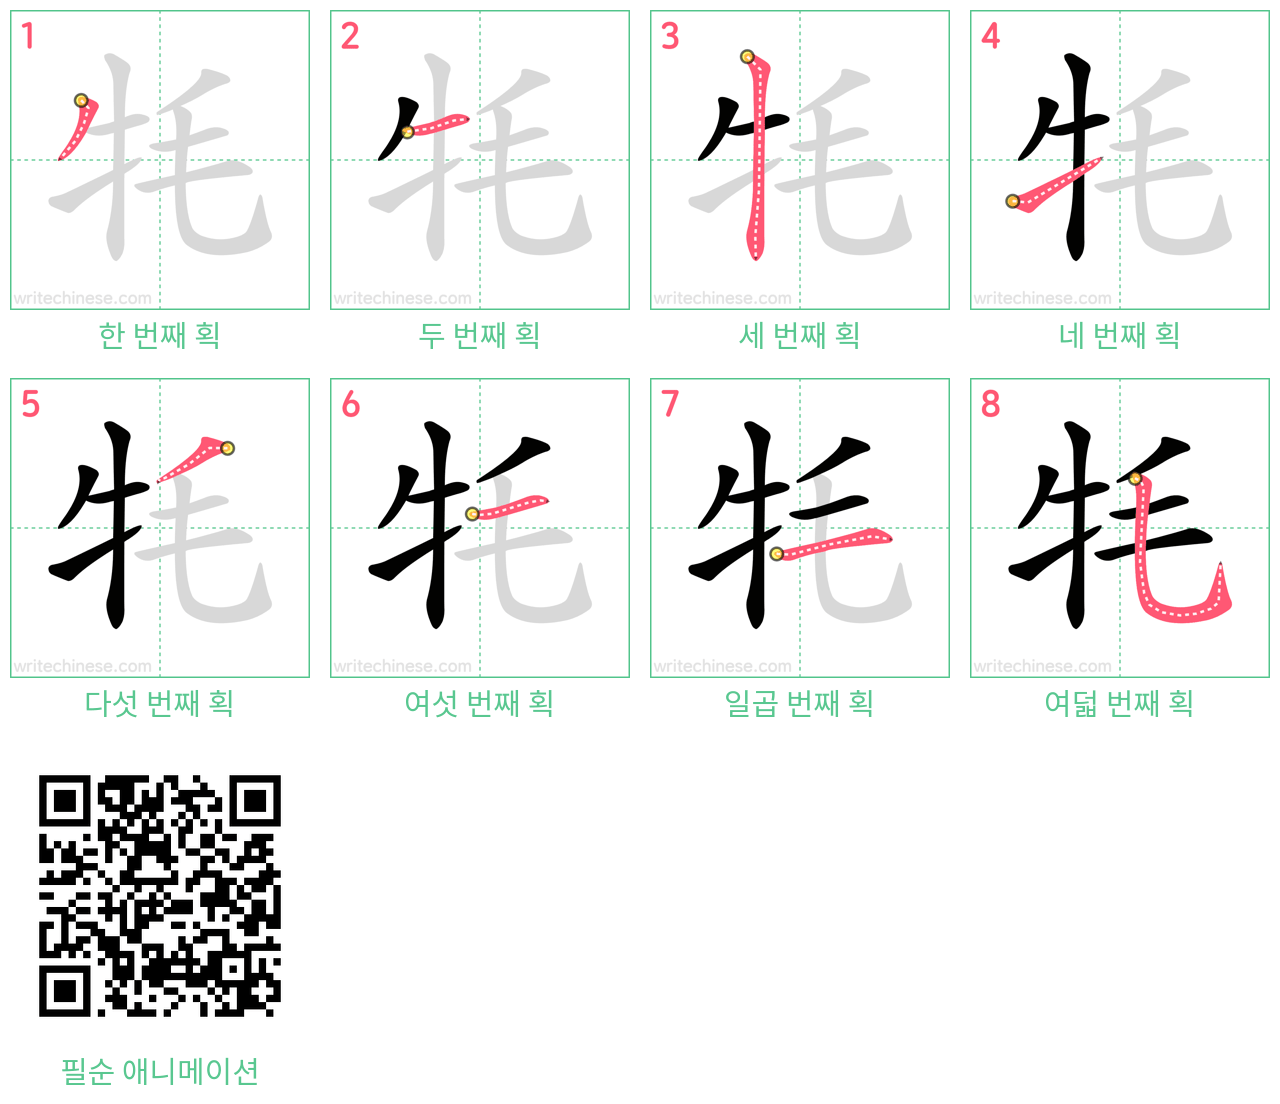 牦 step-by-step stroke order diagrams